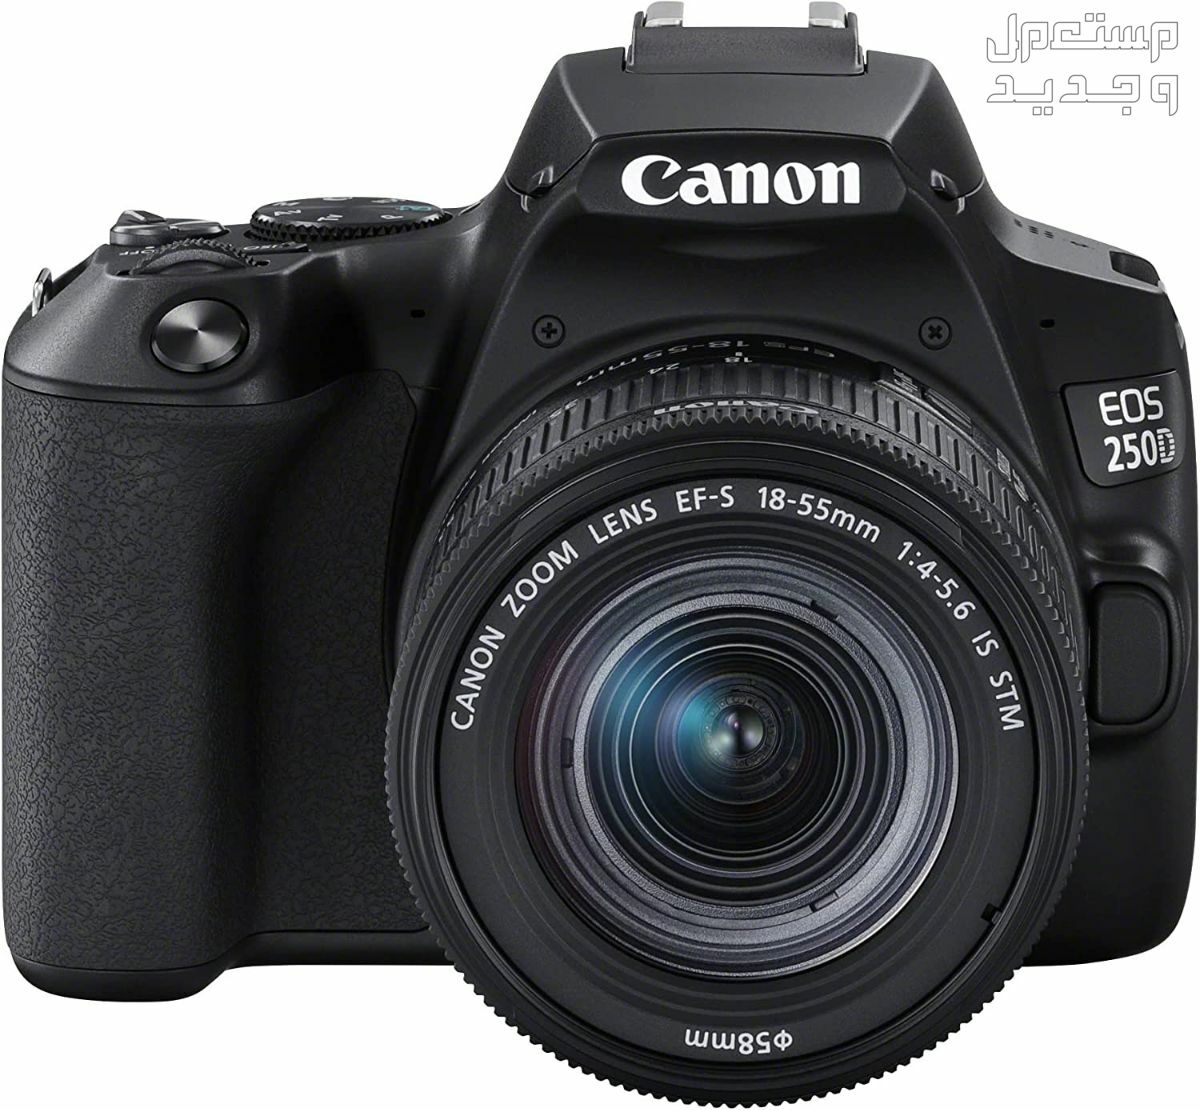 سعر ومميزات ومواصفات أرخص 5 كاميرات تصوير من كانون في اليَمَن مميزات كاميرا Canon EOS 250D